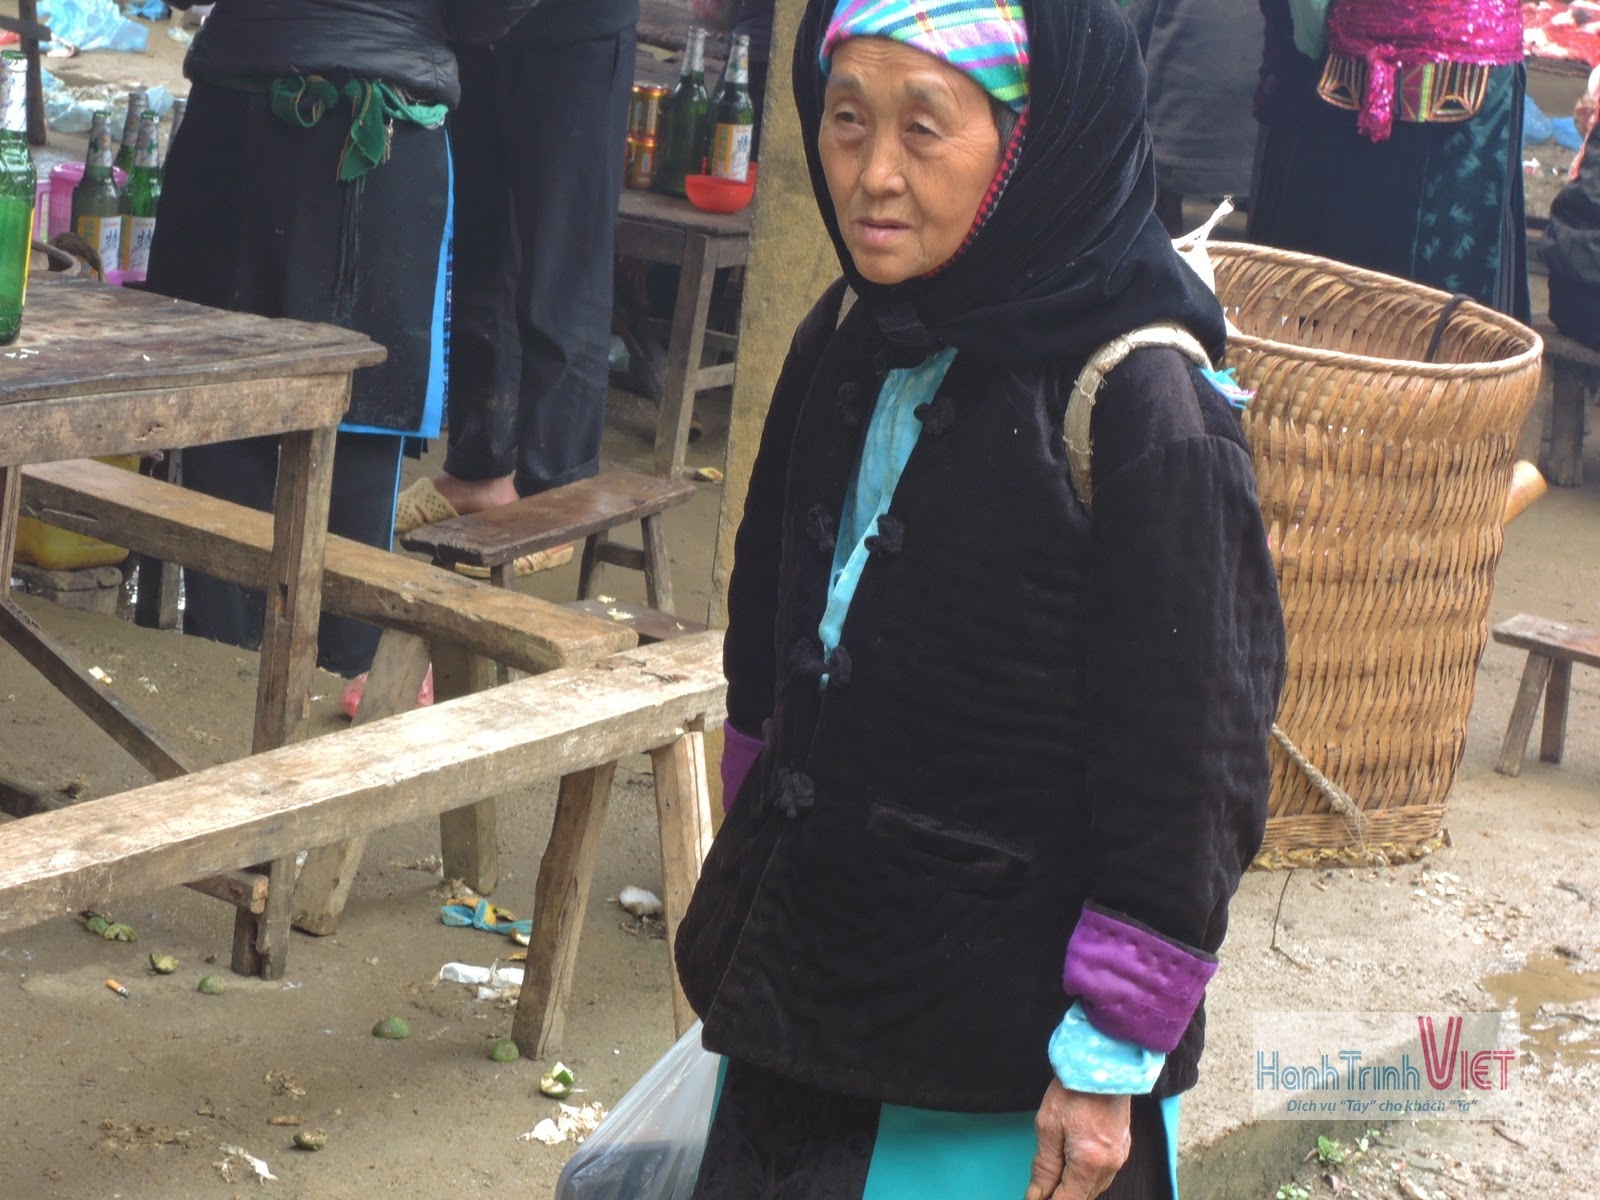 Tham quan chợ lùi Sà Phìn ở Đồng Văn, Hà Giang